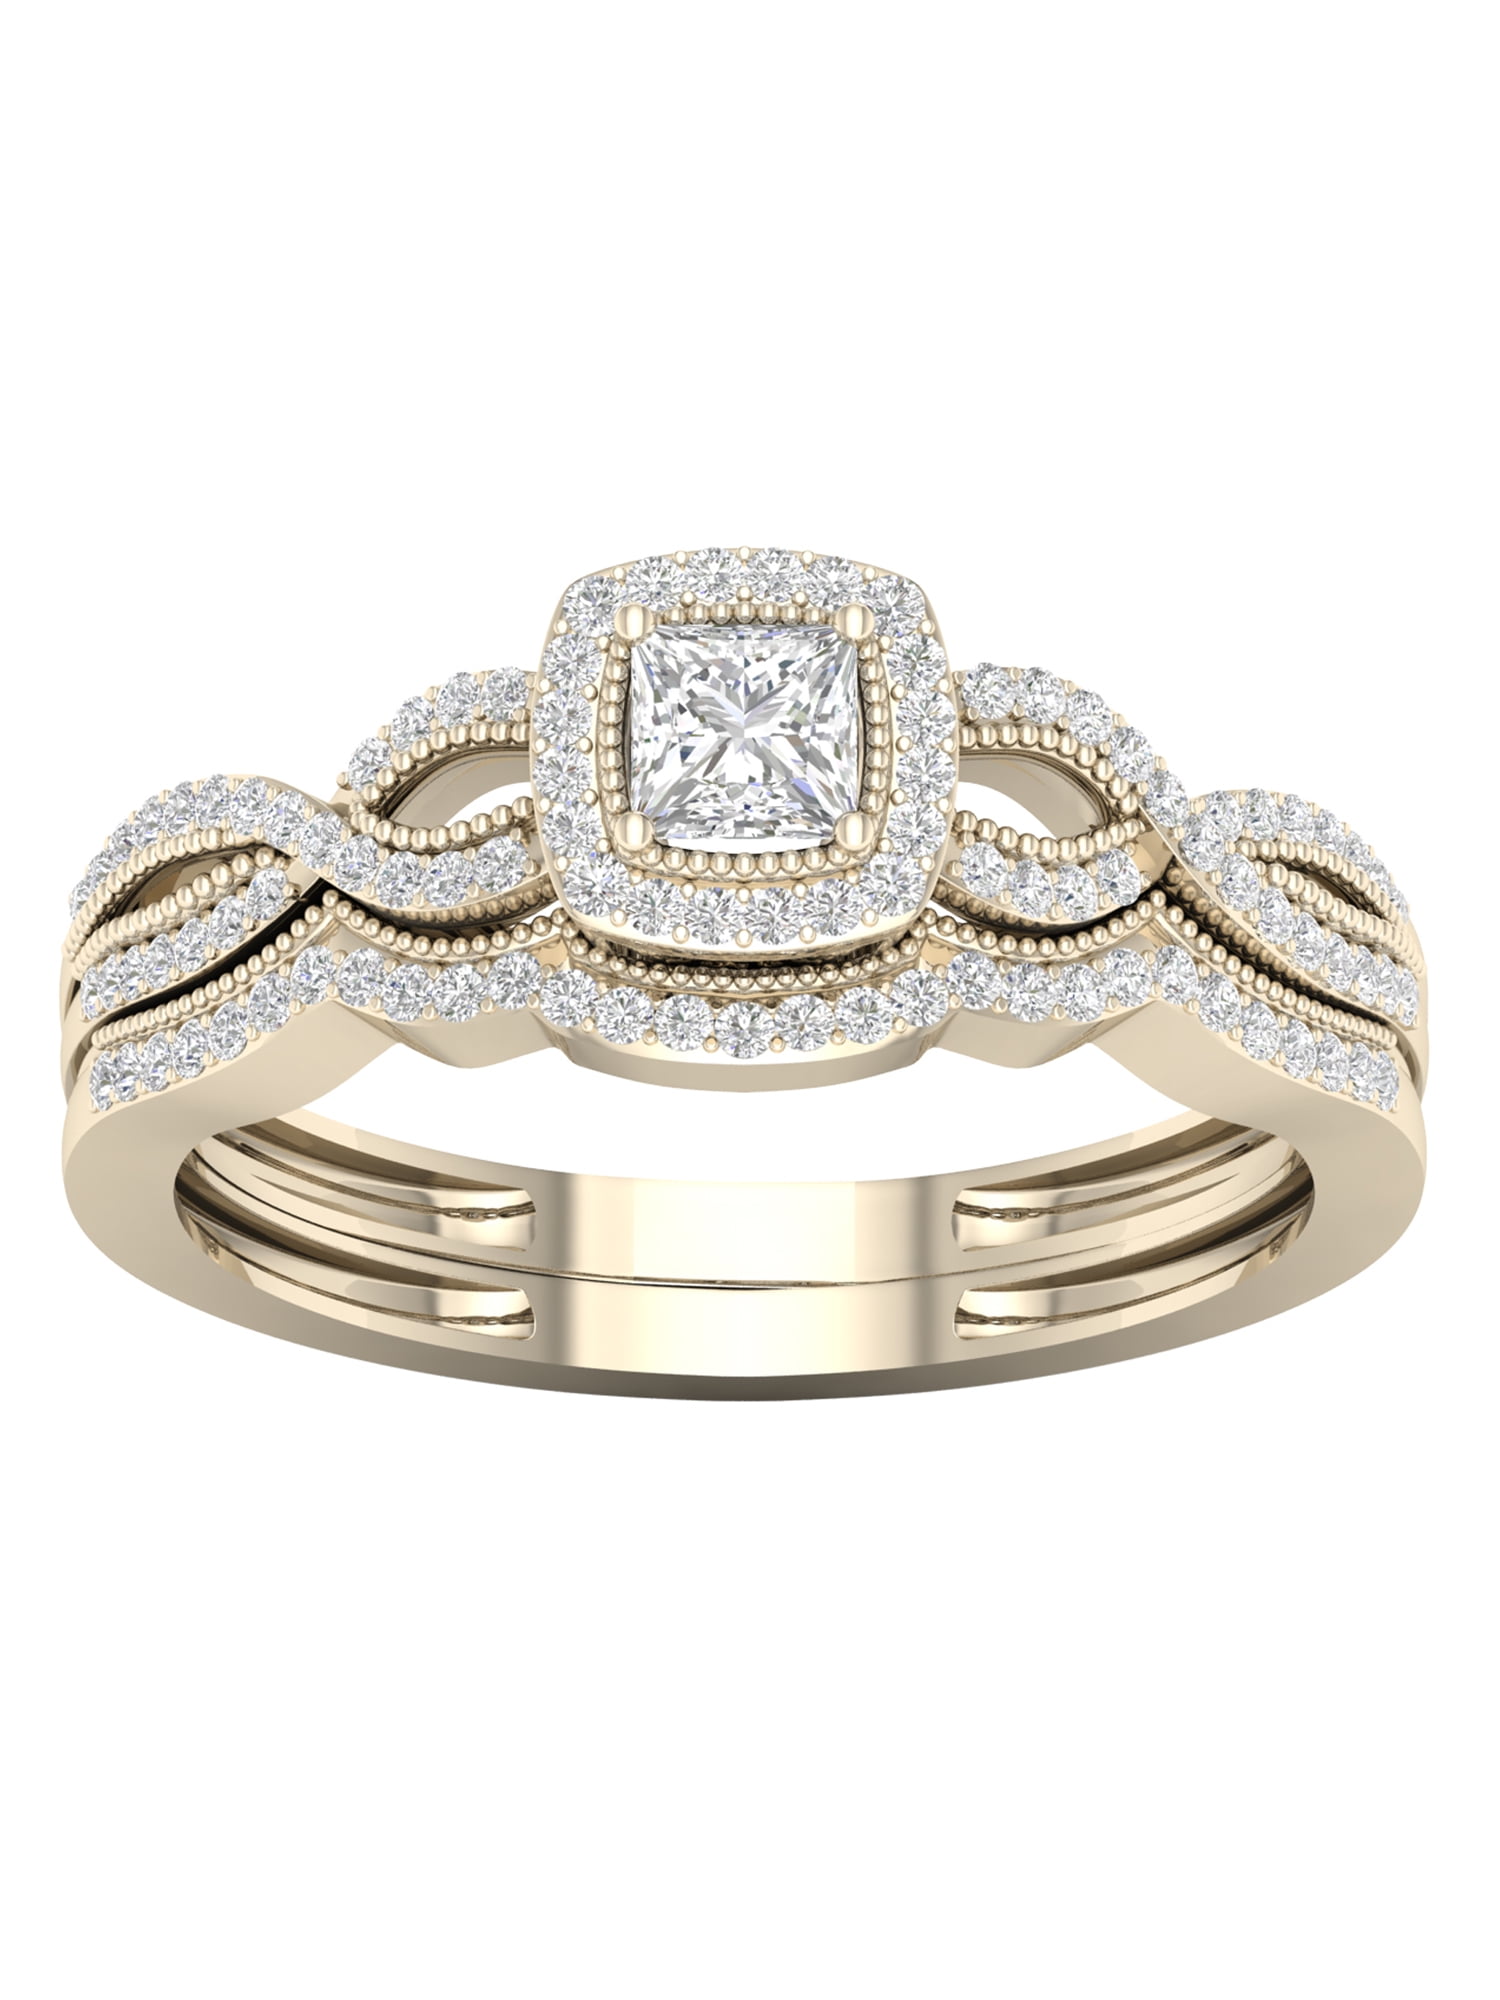 IGI Certified 10k Gold 1/3 Ct TDW Diamond Halo Engagement Ring Set I-J,I2 